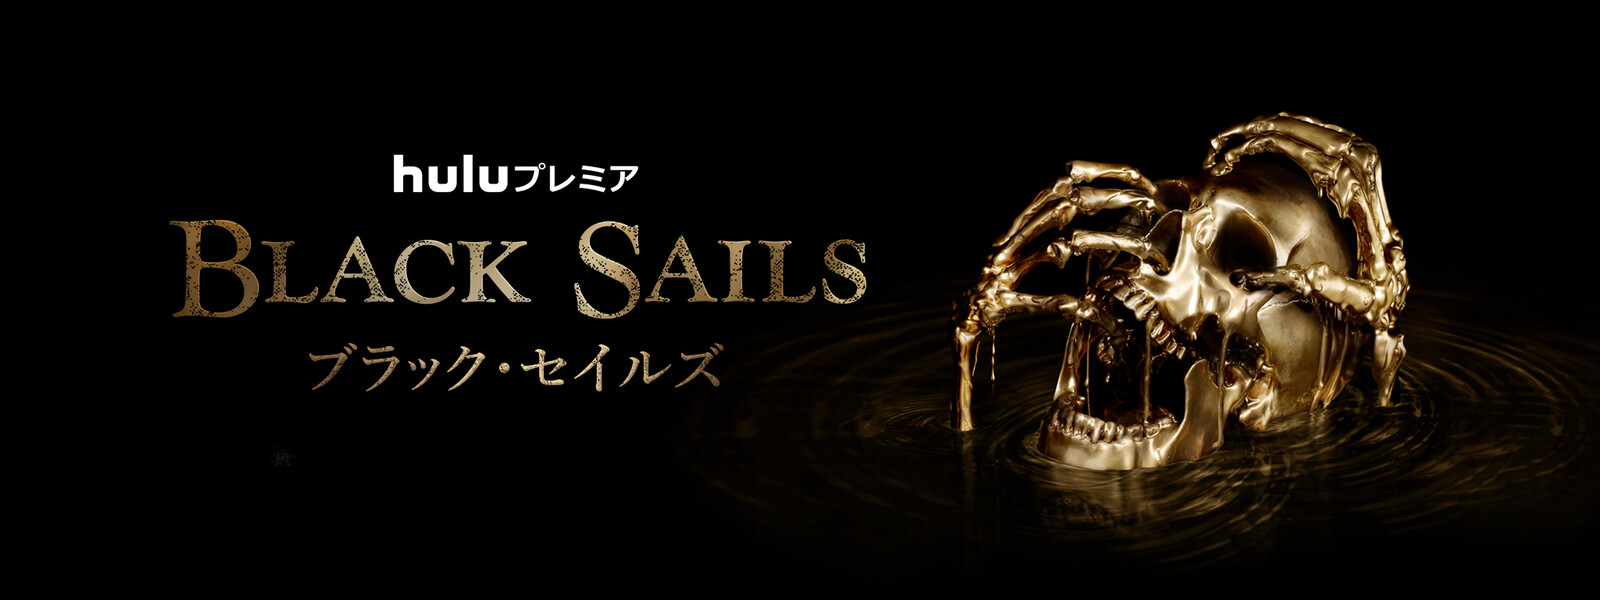 Black Sails／ブラック・セイルズ シーズン3の動画 - Black Sails／ブラック・セイルズ シーズン1